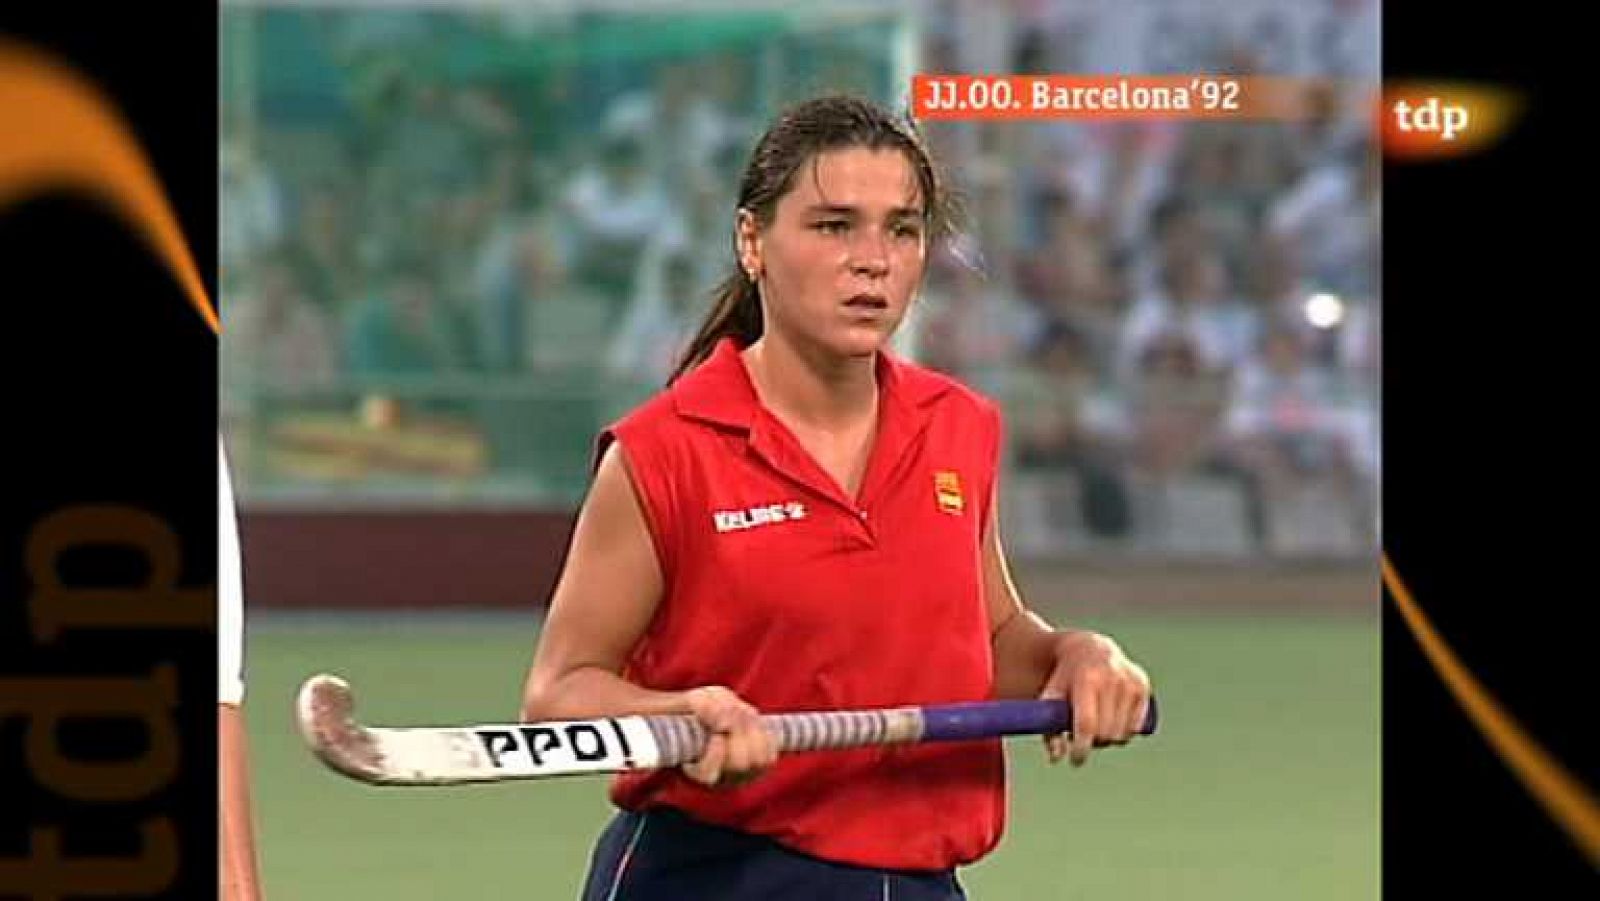 Londres en juego - Barcelona 1992: Hockey hierba femenino